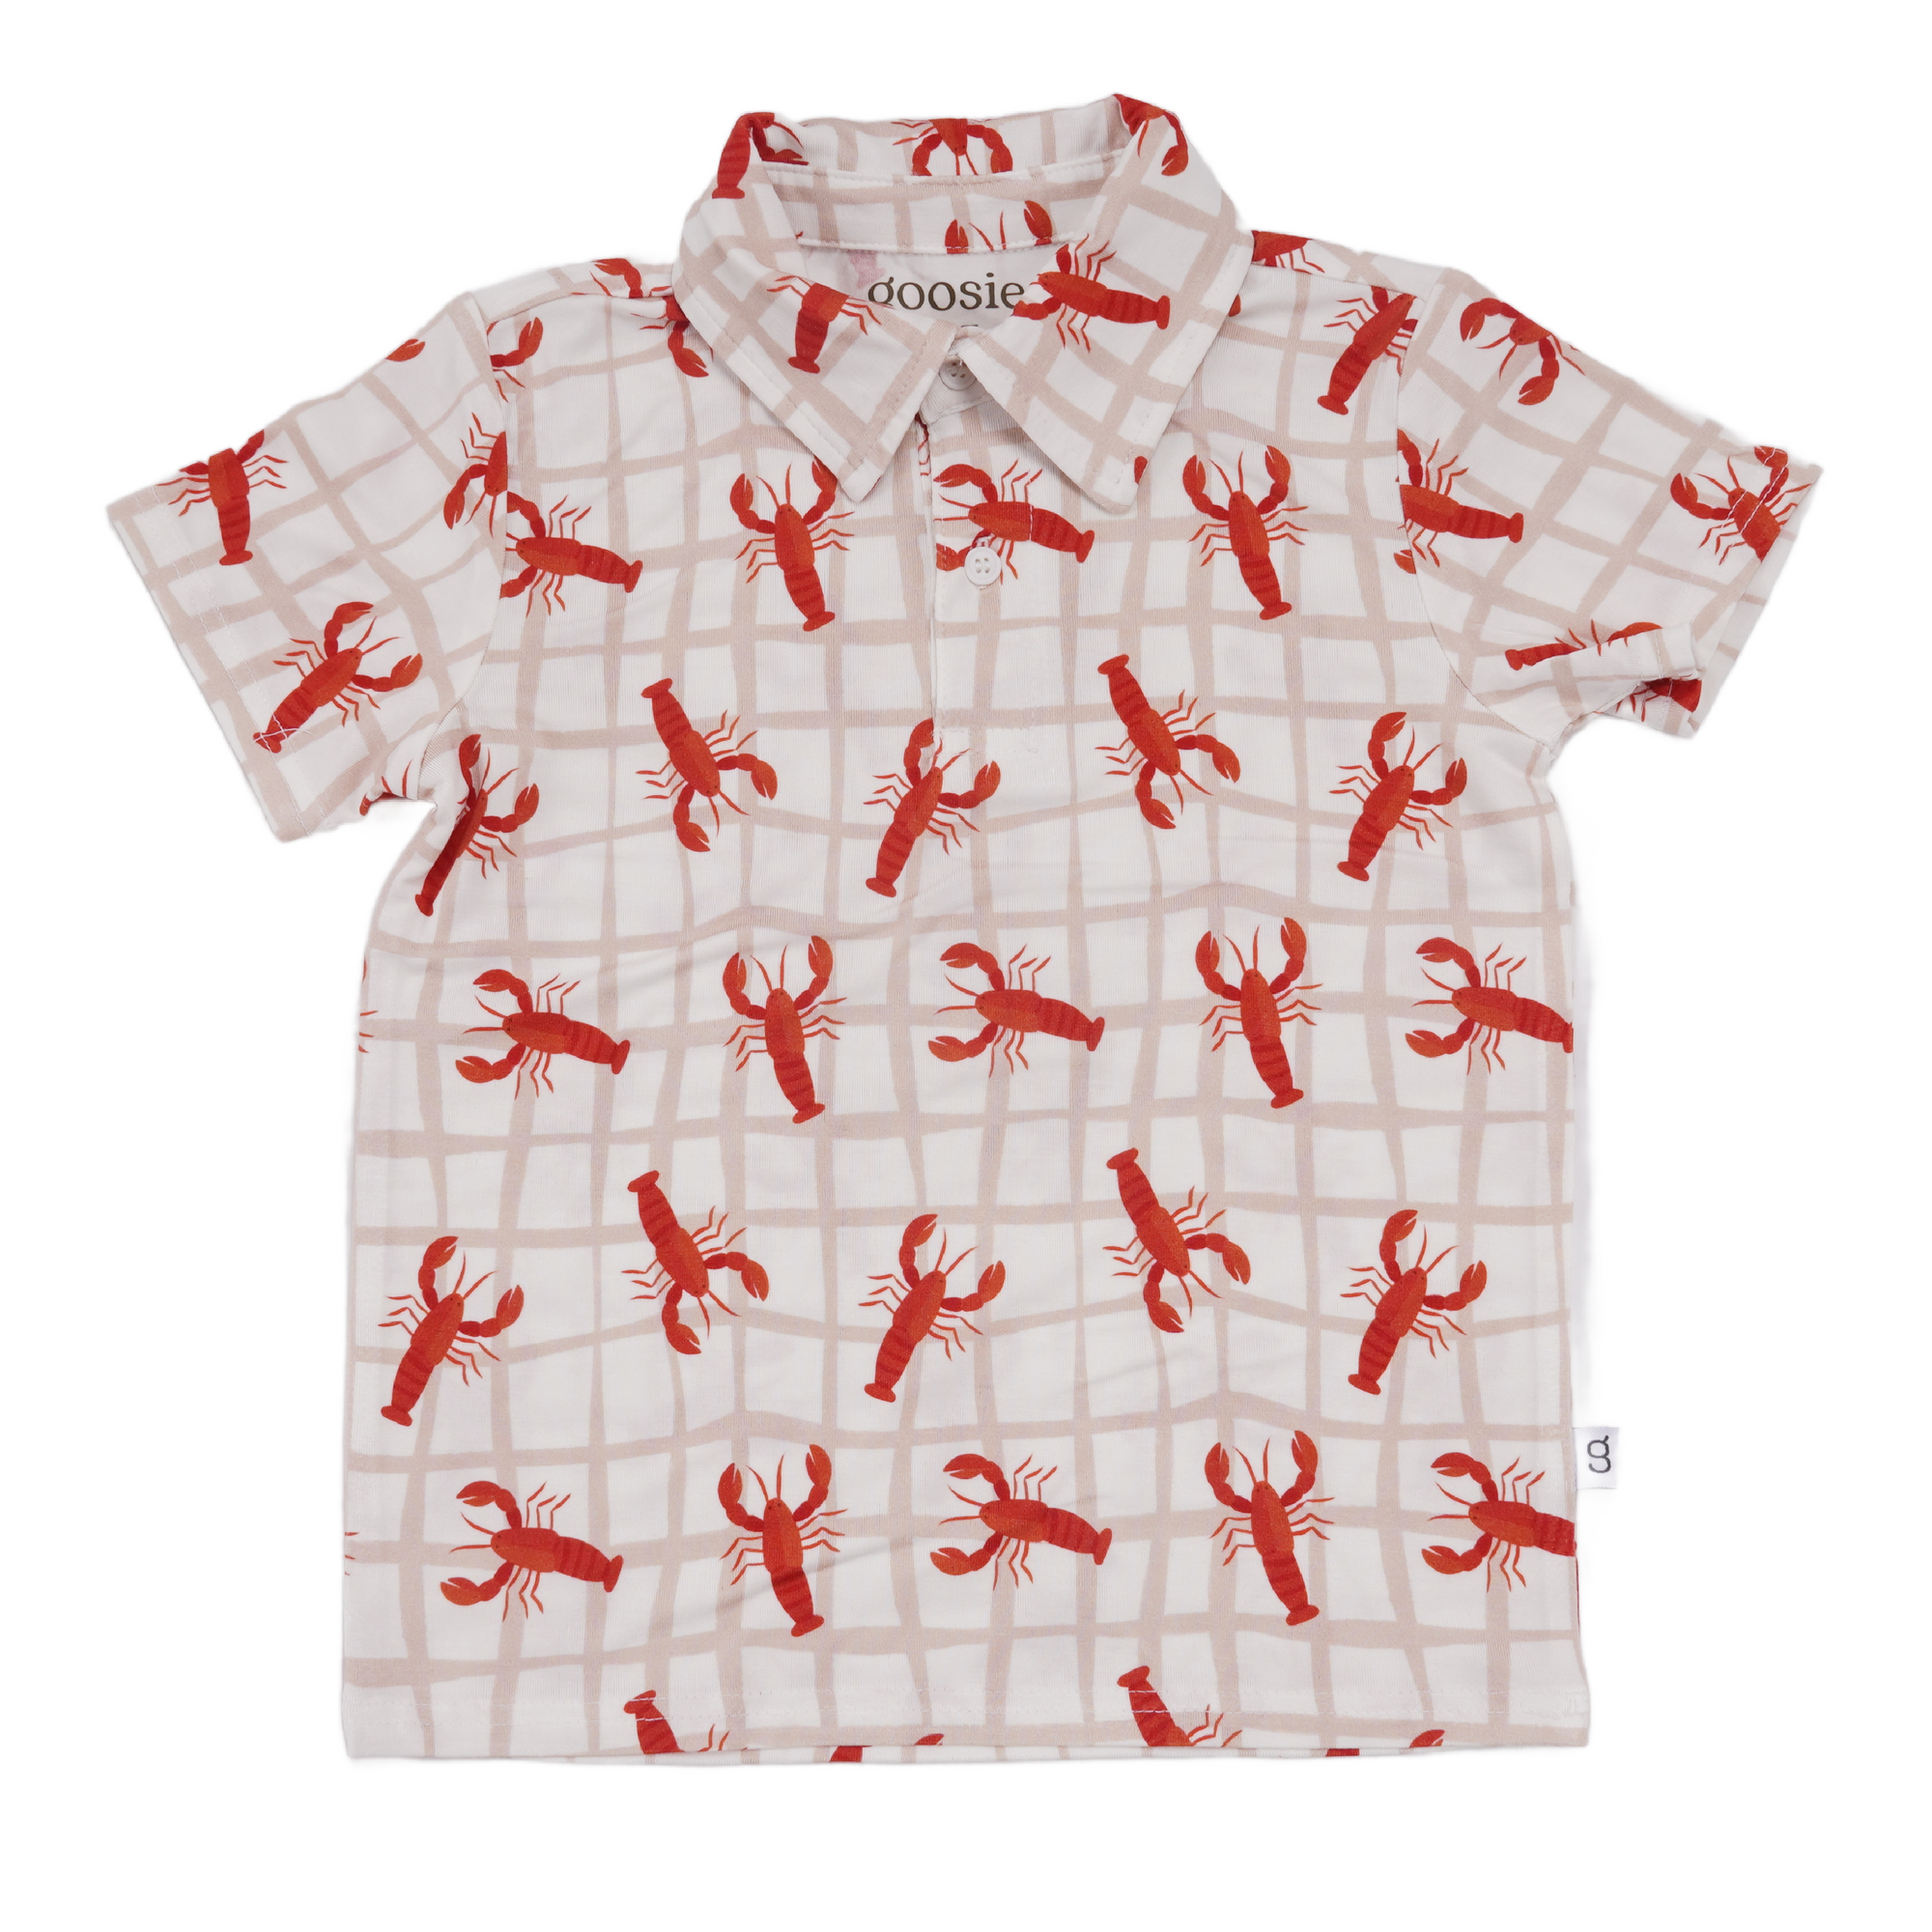 Toddler Crawfish Shirt